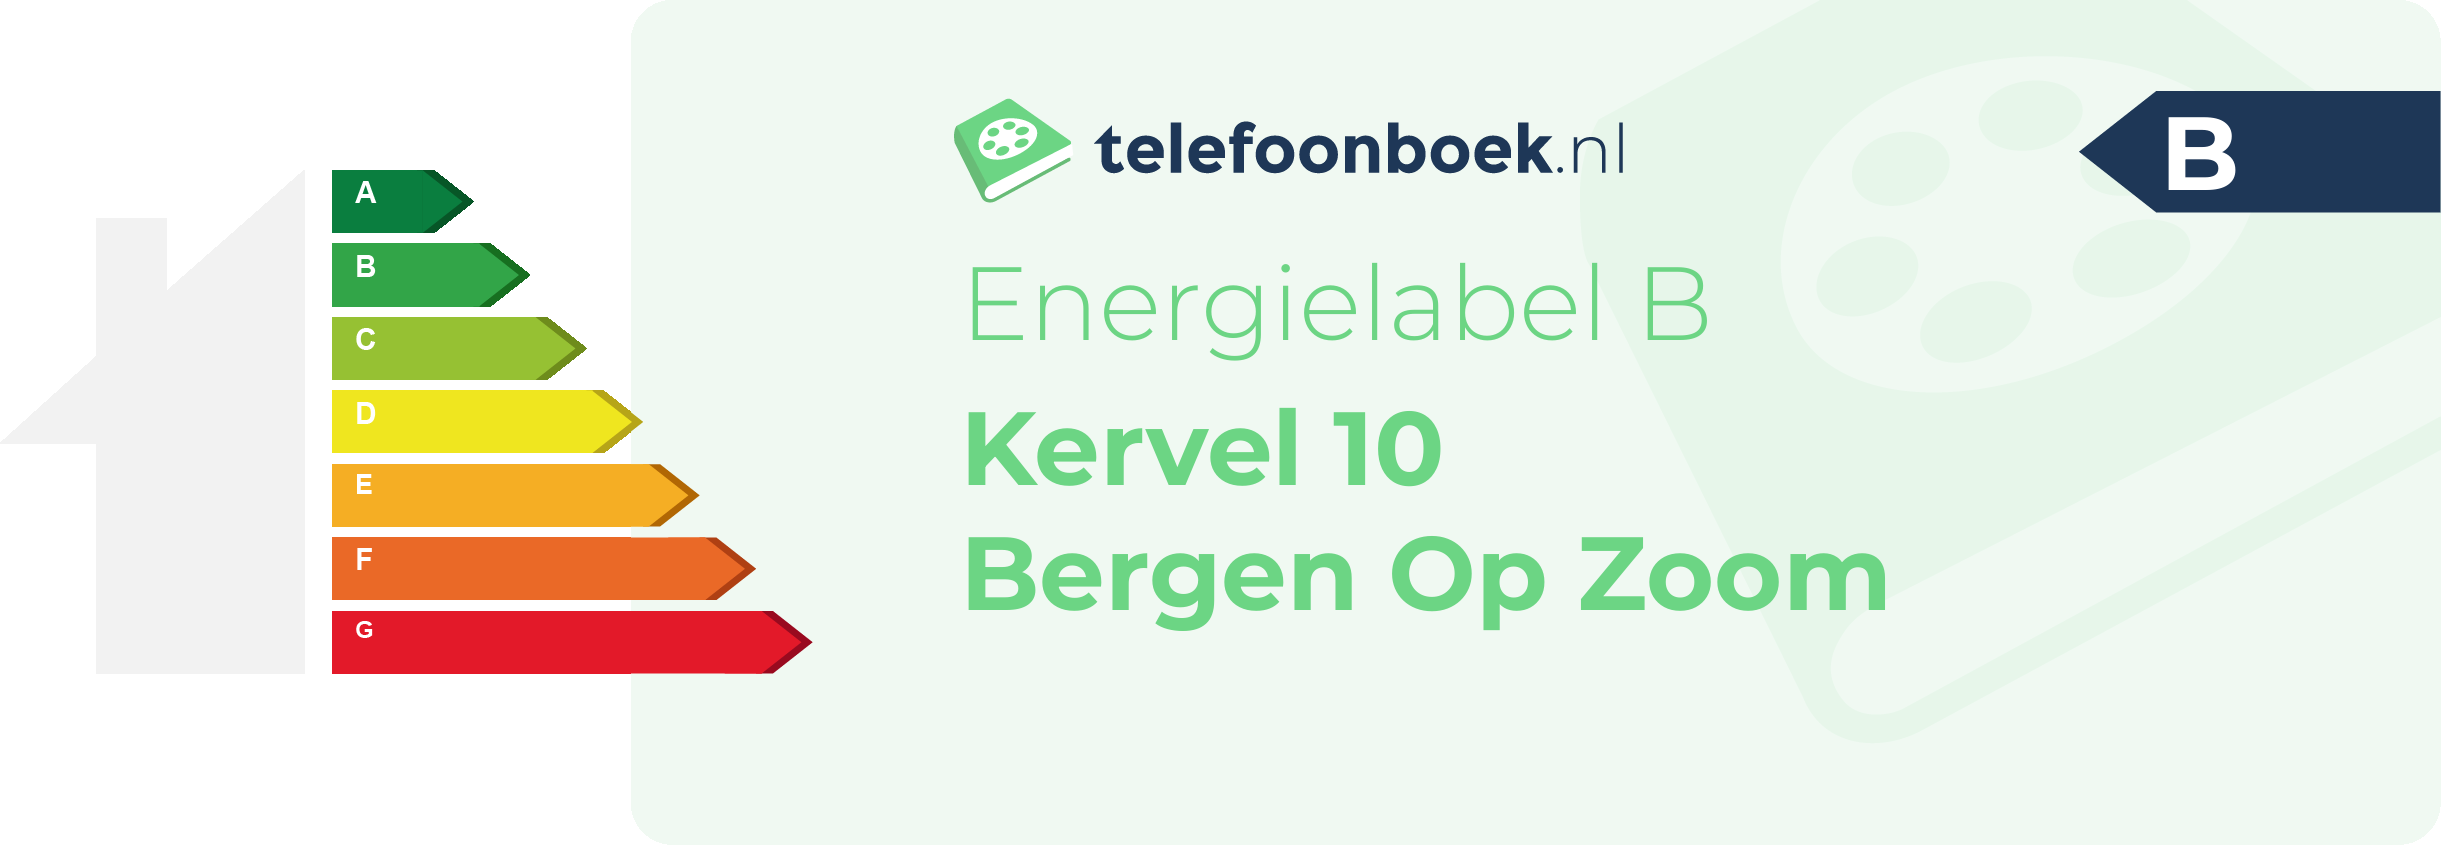 Energielabel Kervel 10 Bergen Op Zoom